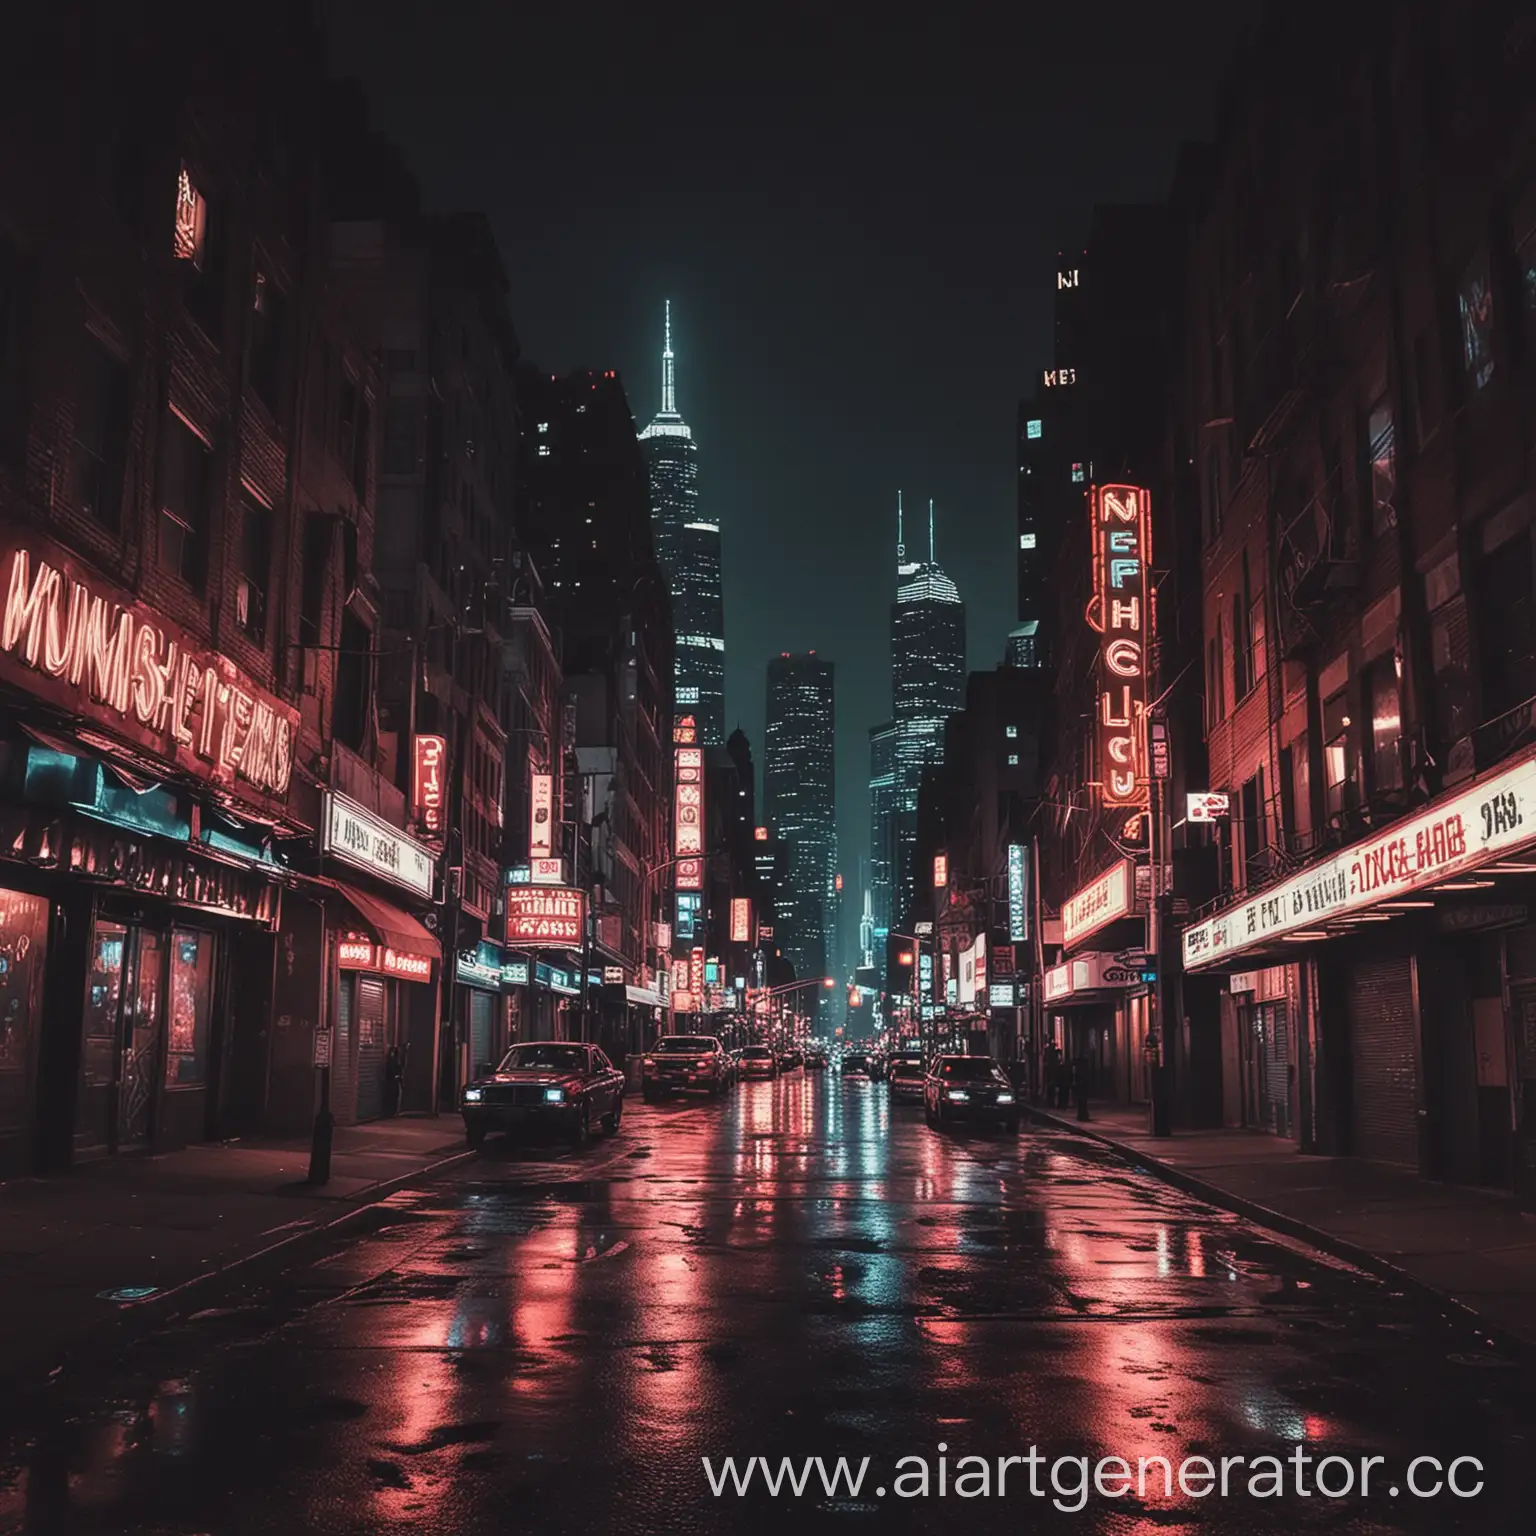 Vibrant-Neon-Lights-Illuminate-the-Streets-of-the-Midnight-City